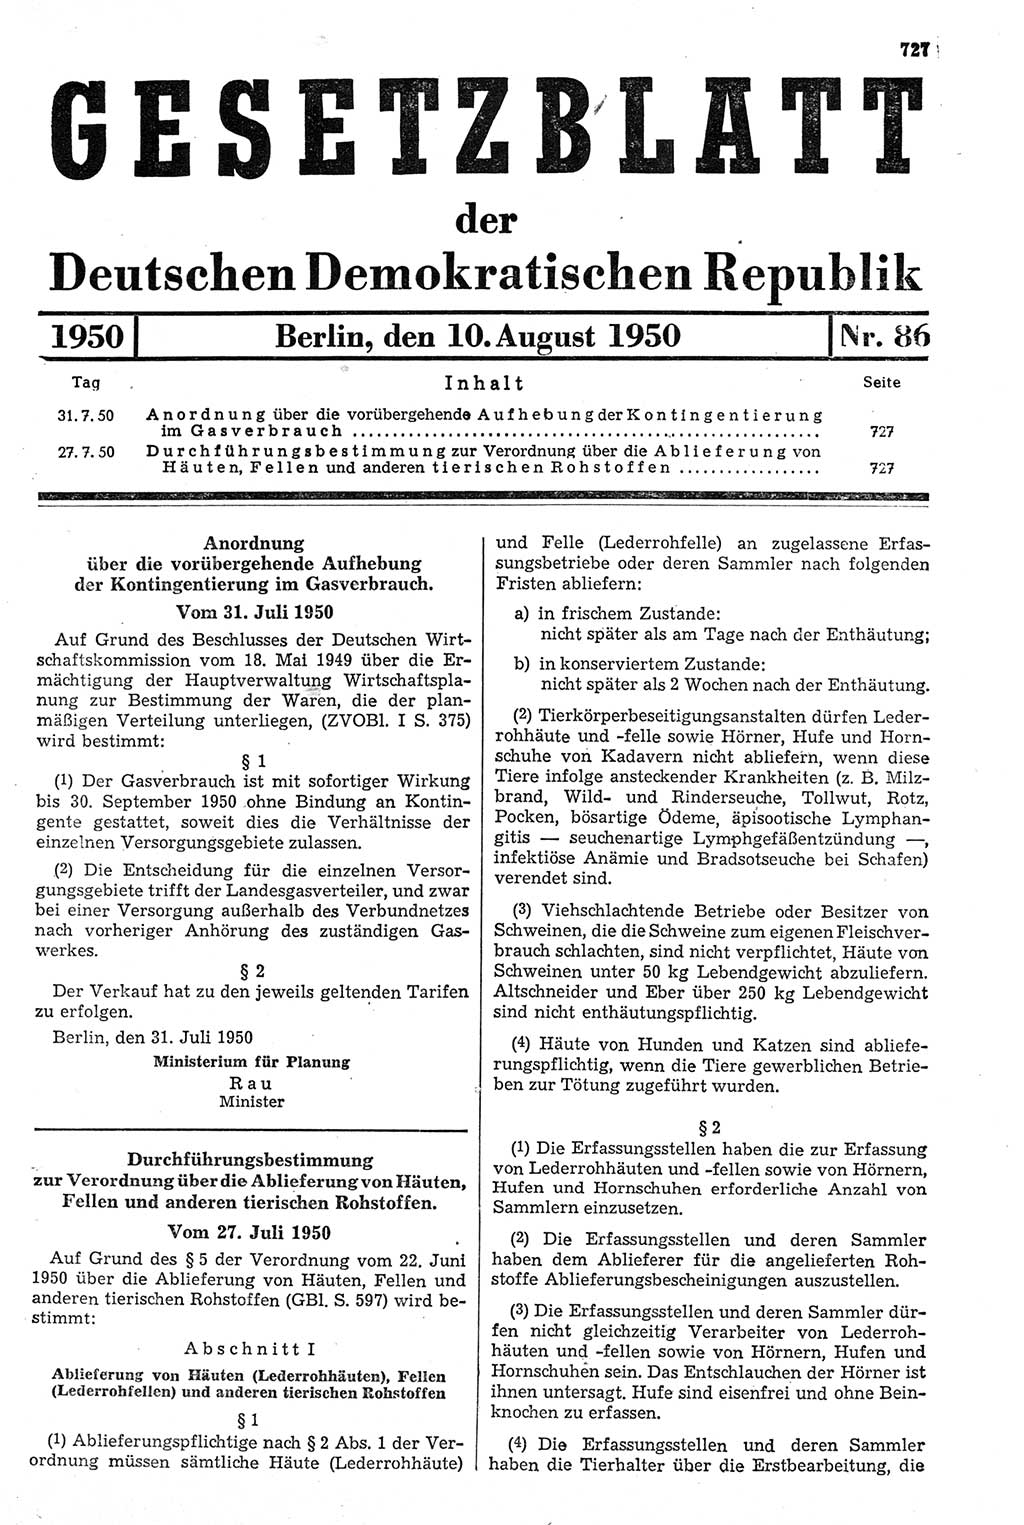 Gesetzblatt (GBl.) der Deutschen Demokratischen Republik (DDR) 1950, Seite 727 (GBl. DDR 1950, S. 727)